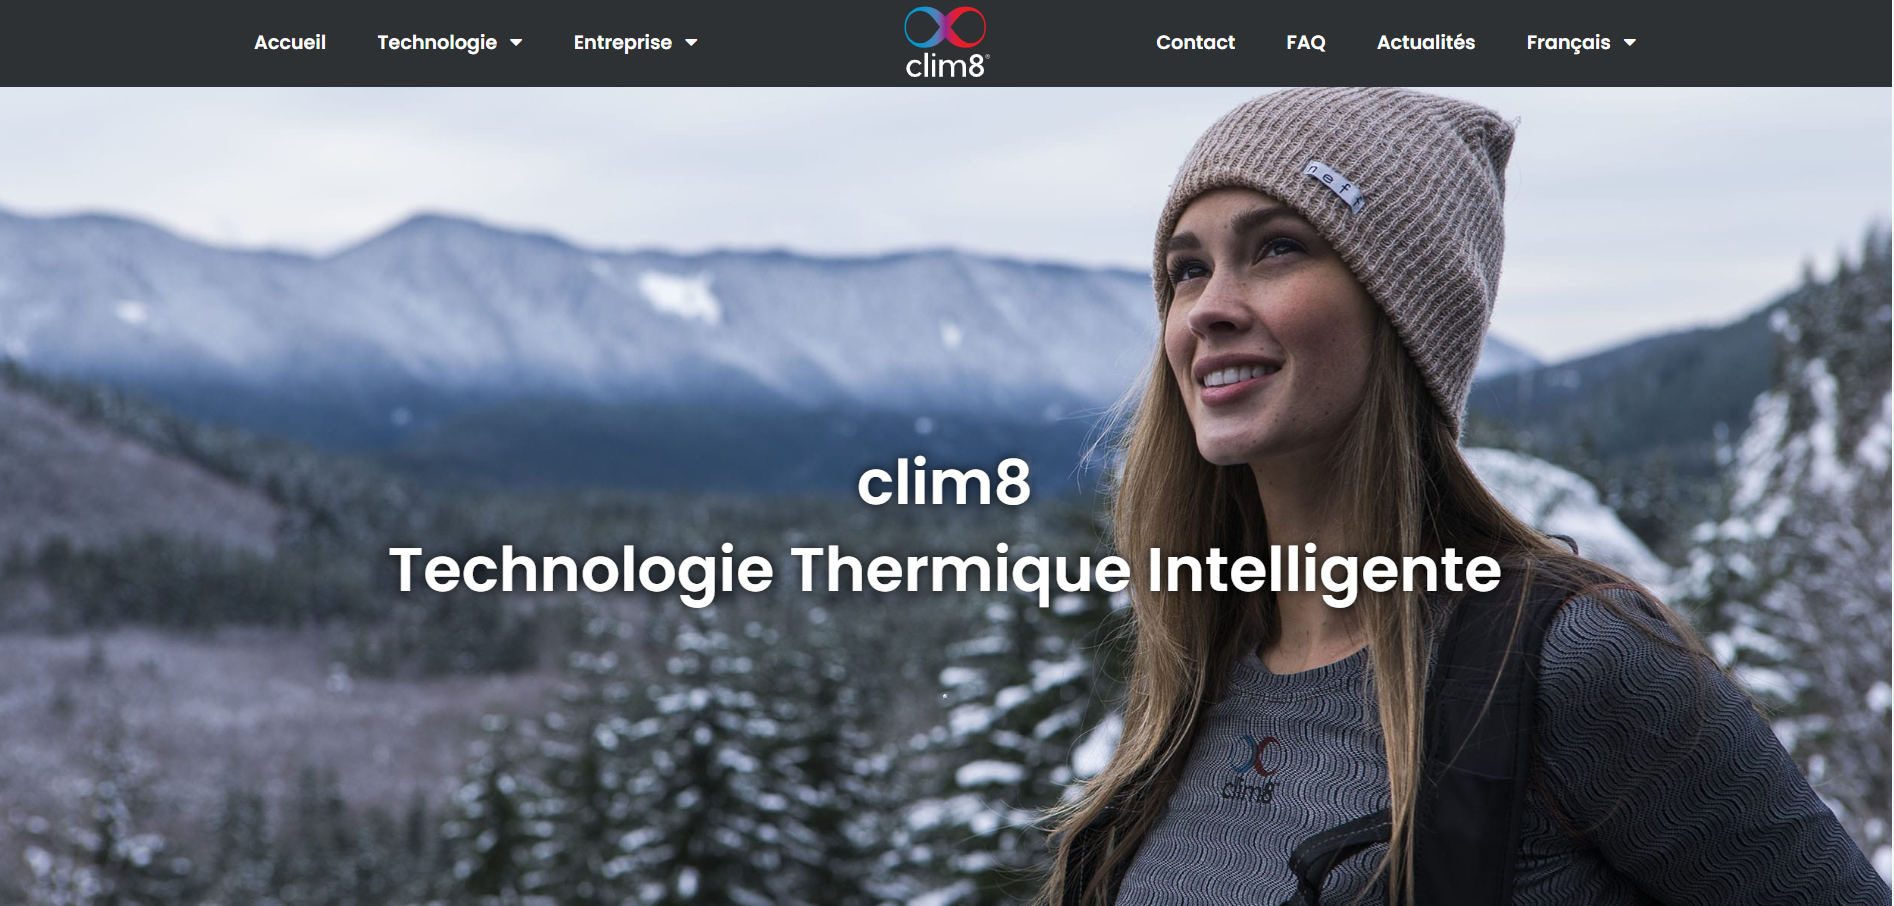 主攻服装智能恒温技术的法国科技公司 Clim8 融资270万欧元